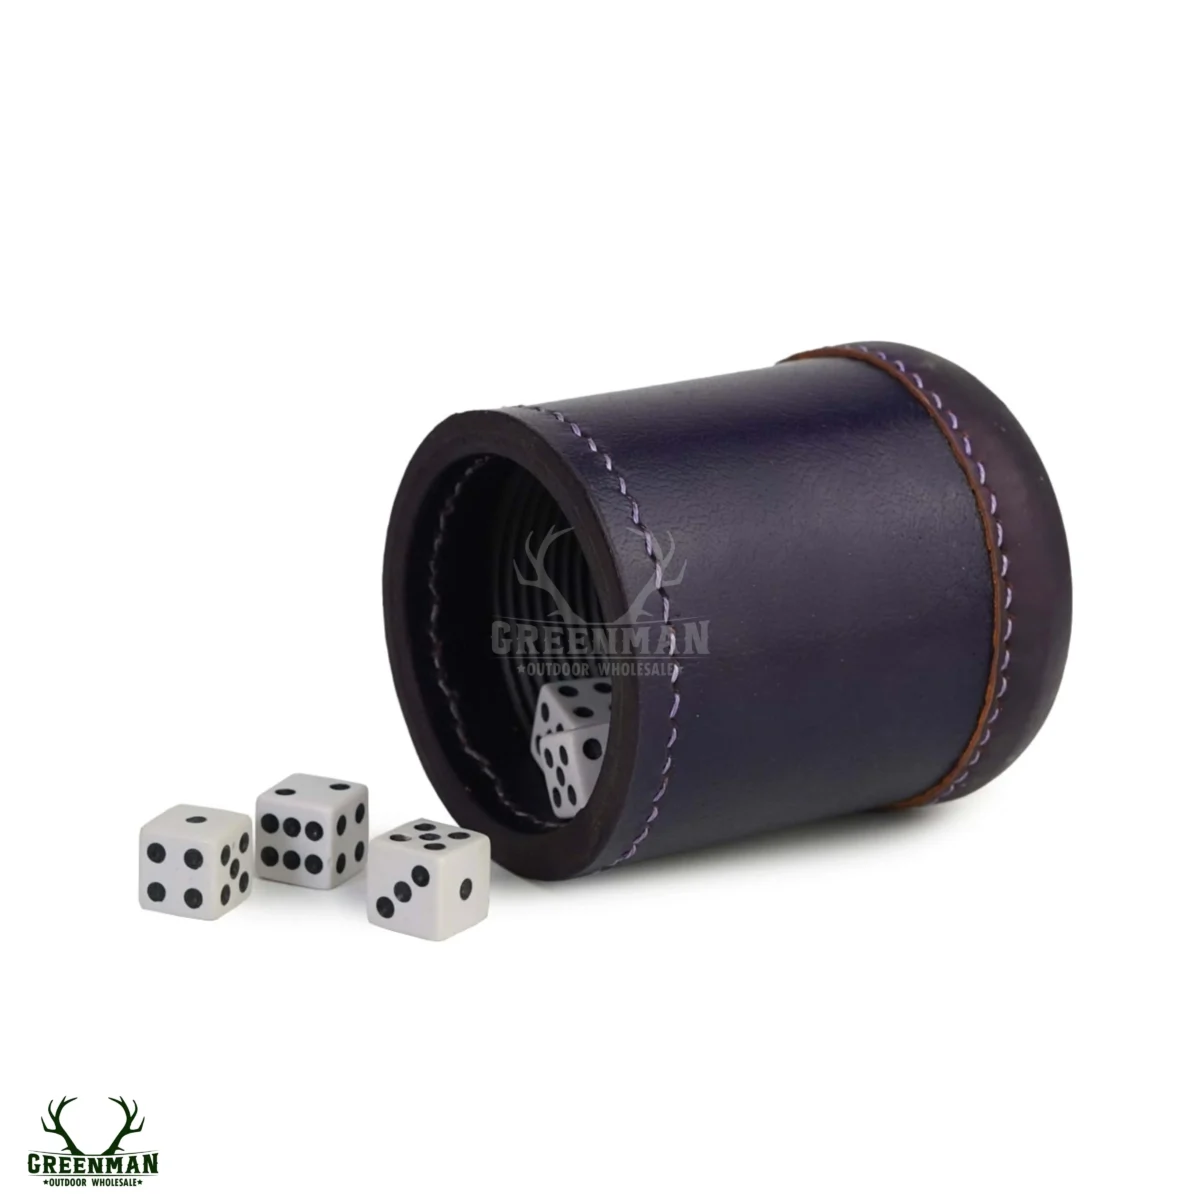 leather dice cup, leather dice shaker, purple dice cup